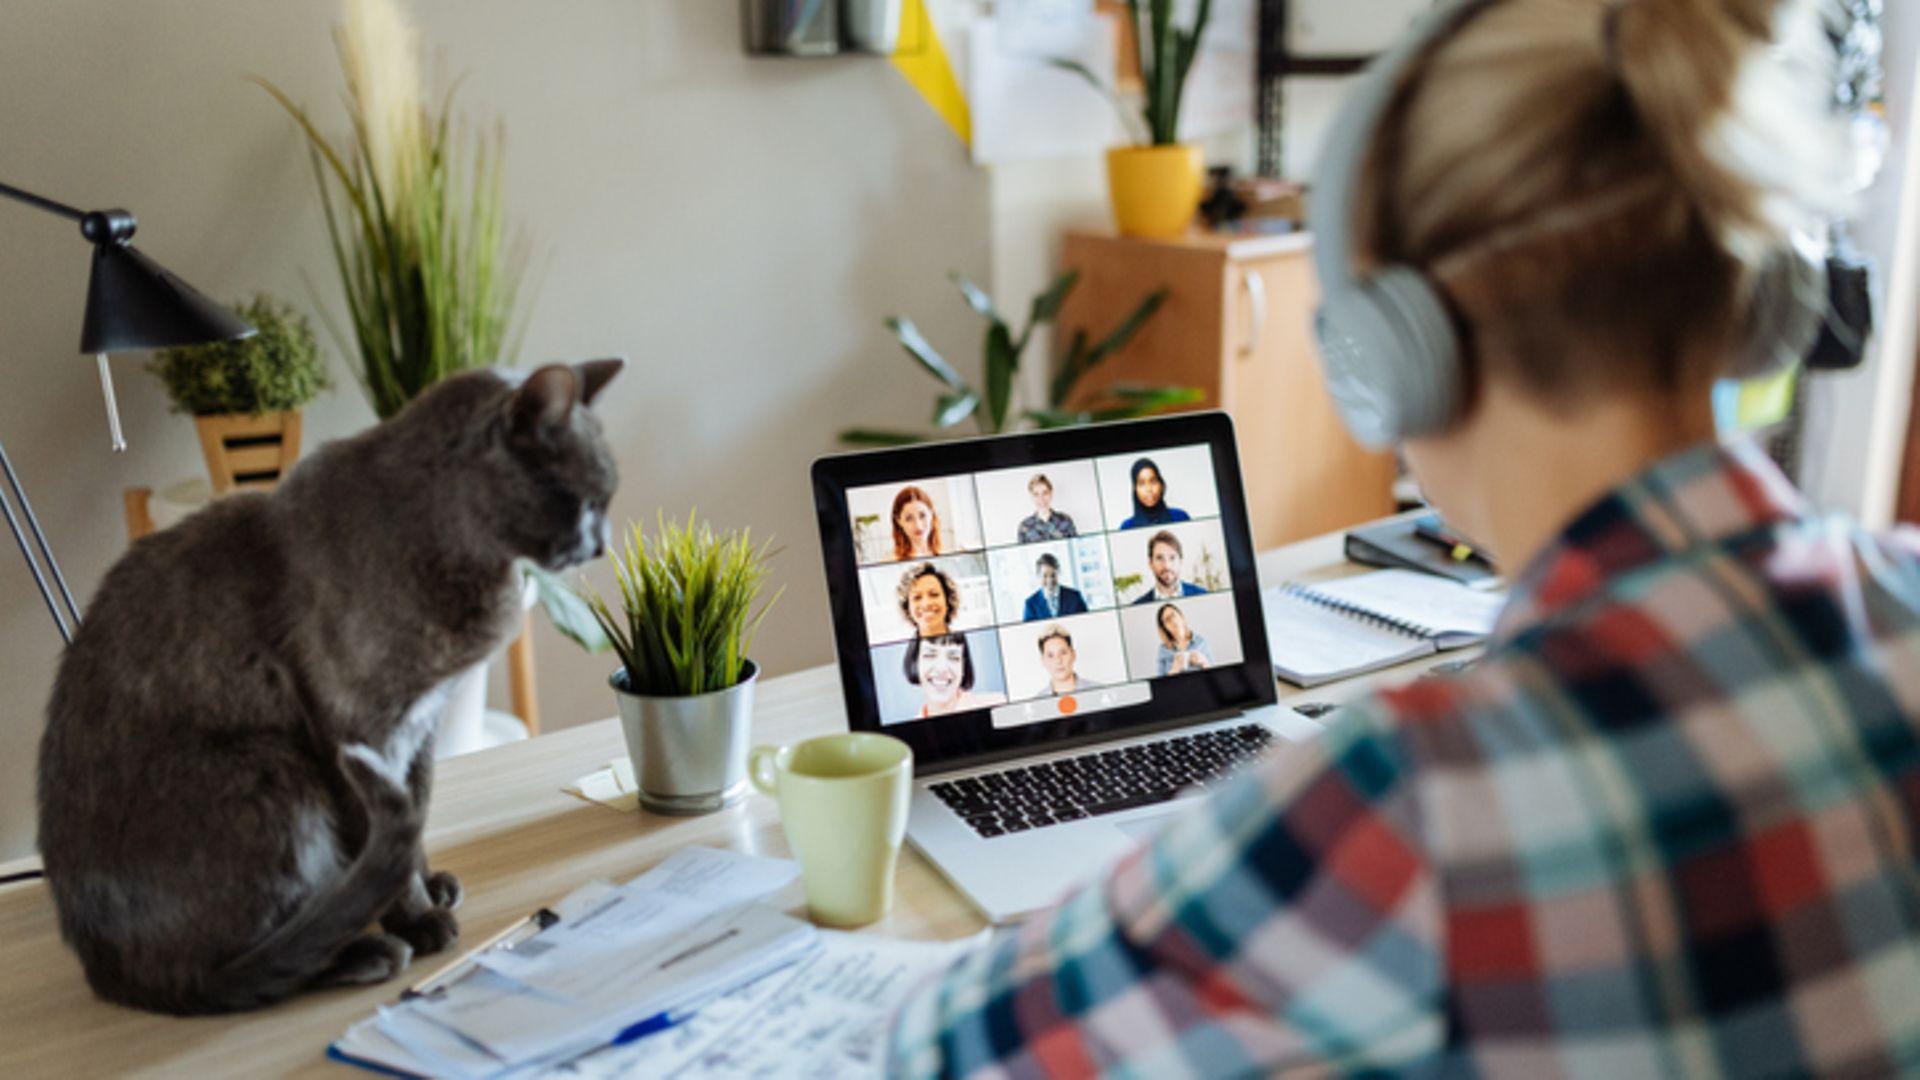 Home-Office: Frau sitzt mit Kopfhörern vor einem Bildschirm und nimmt an einem Meeting teil